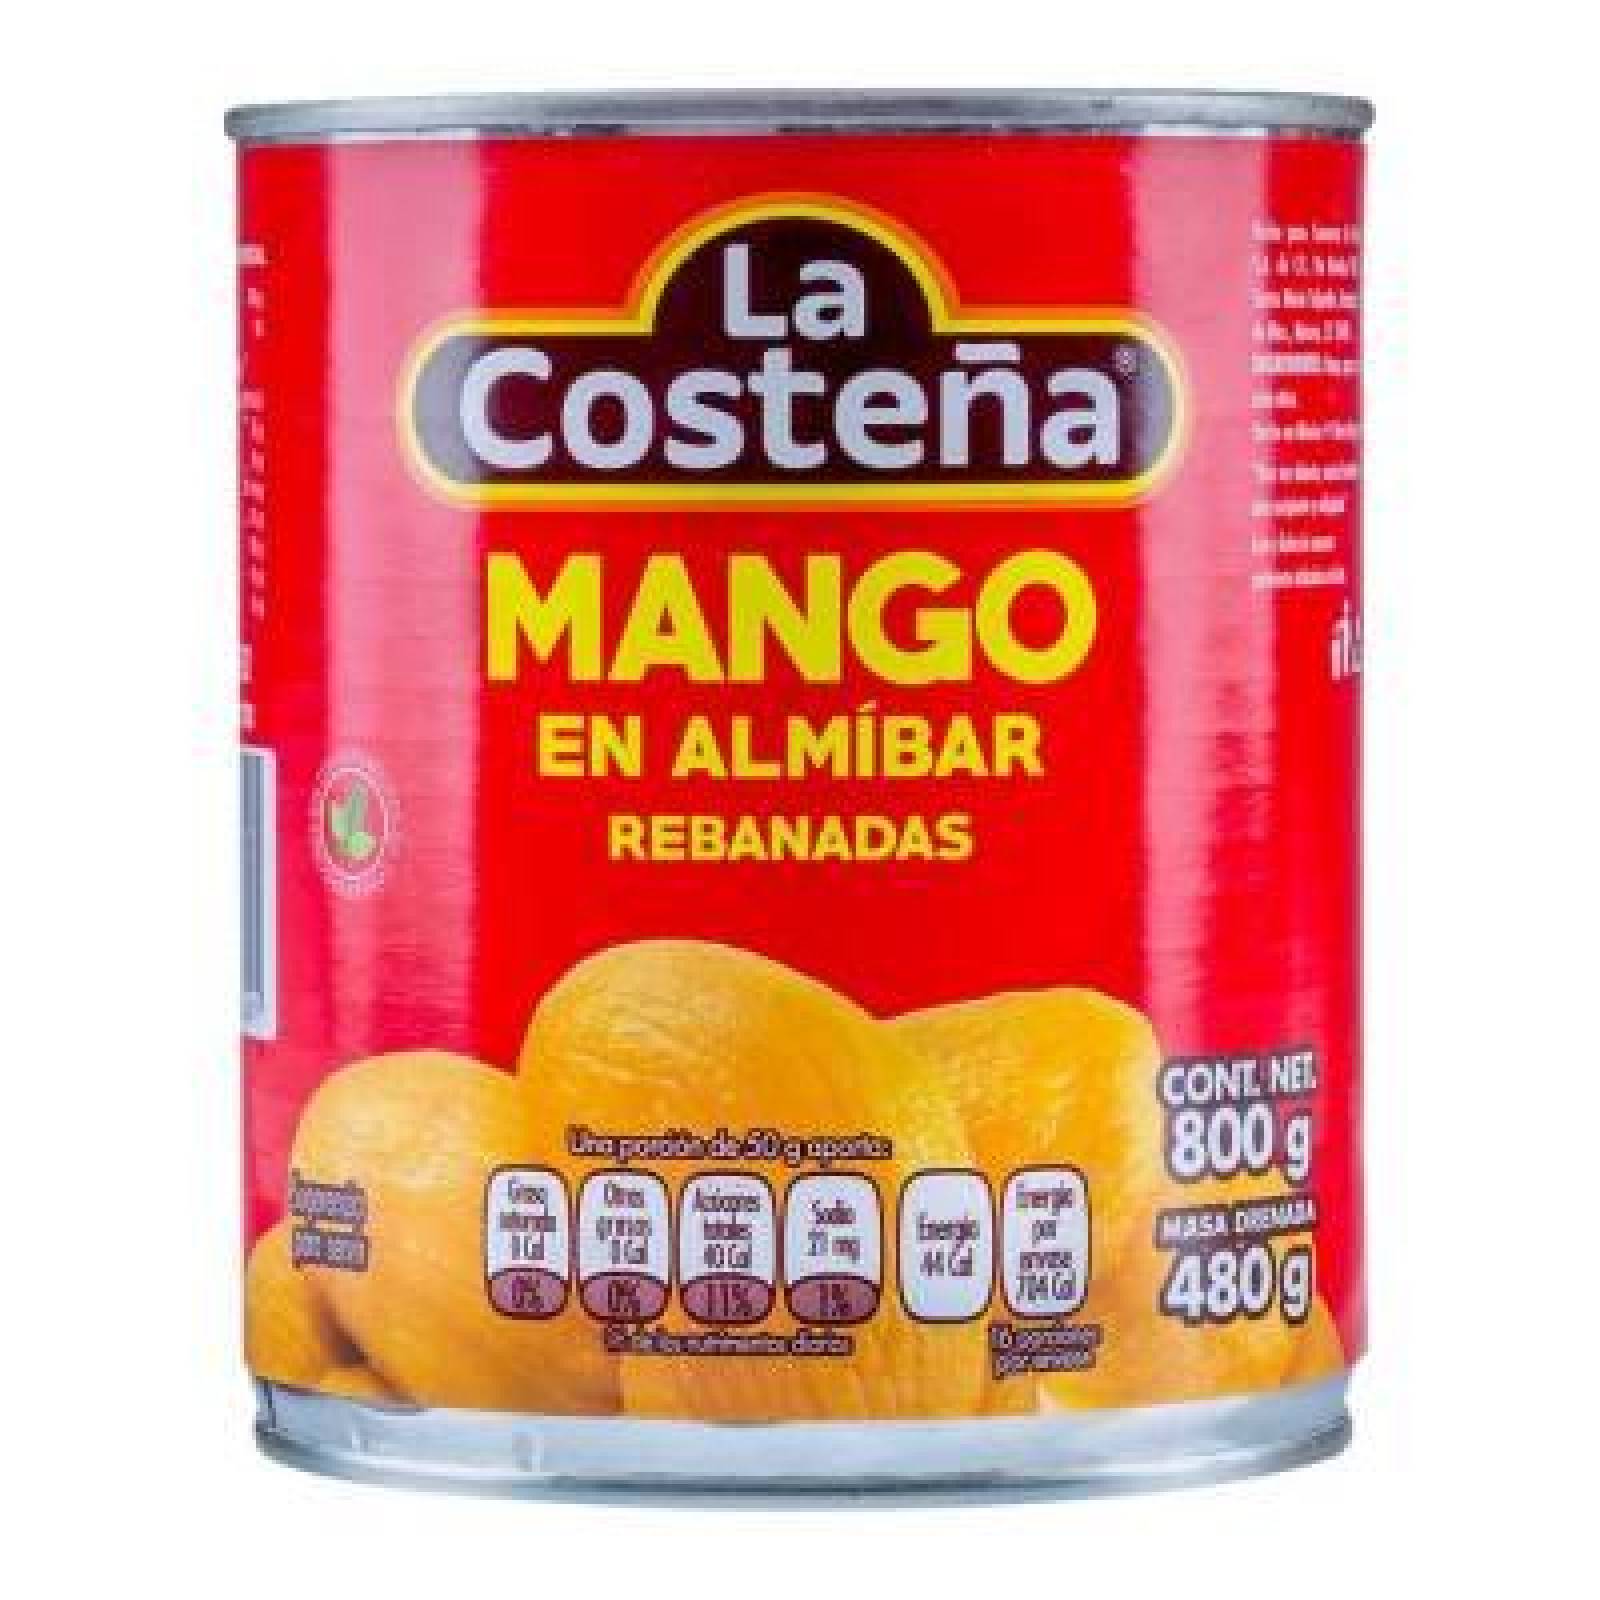 La Costeña Mango en Almíbar en Rebanadas lata 800g 